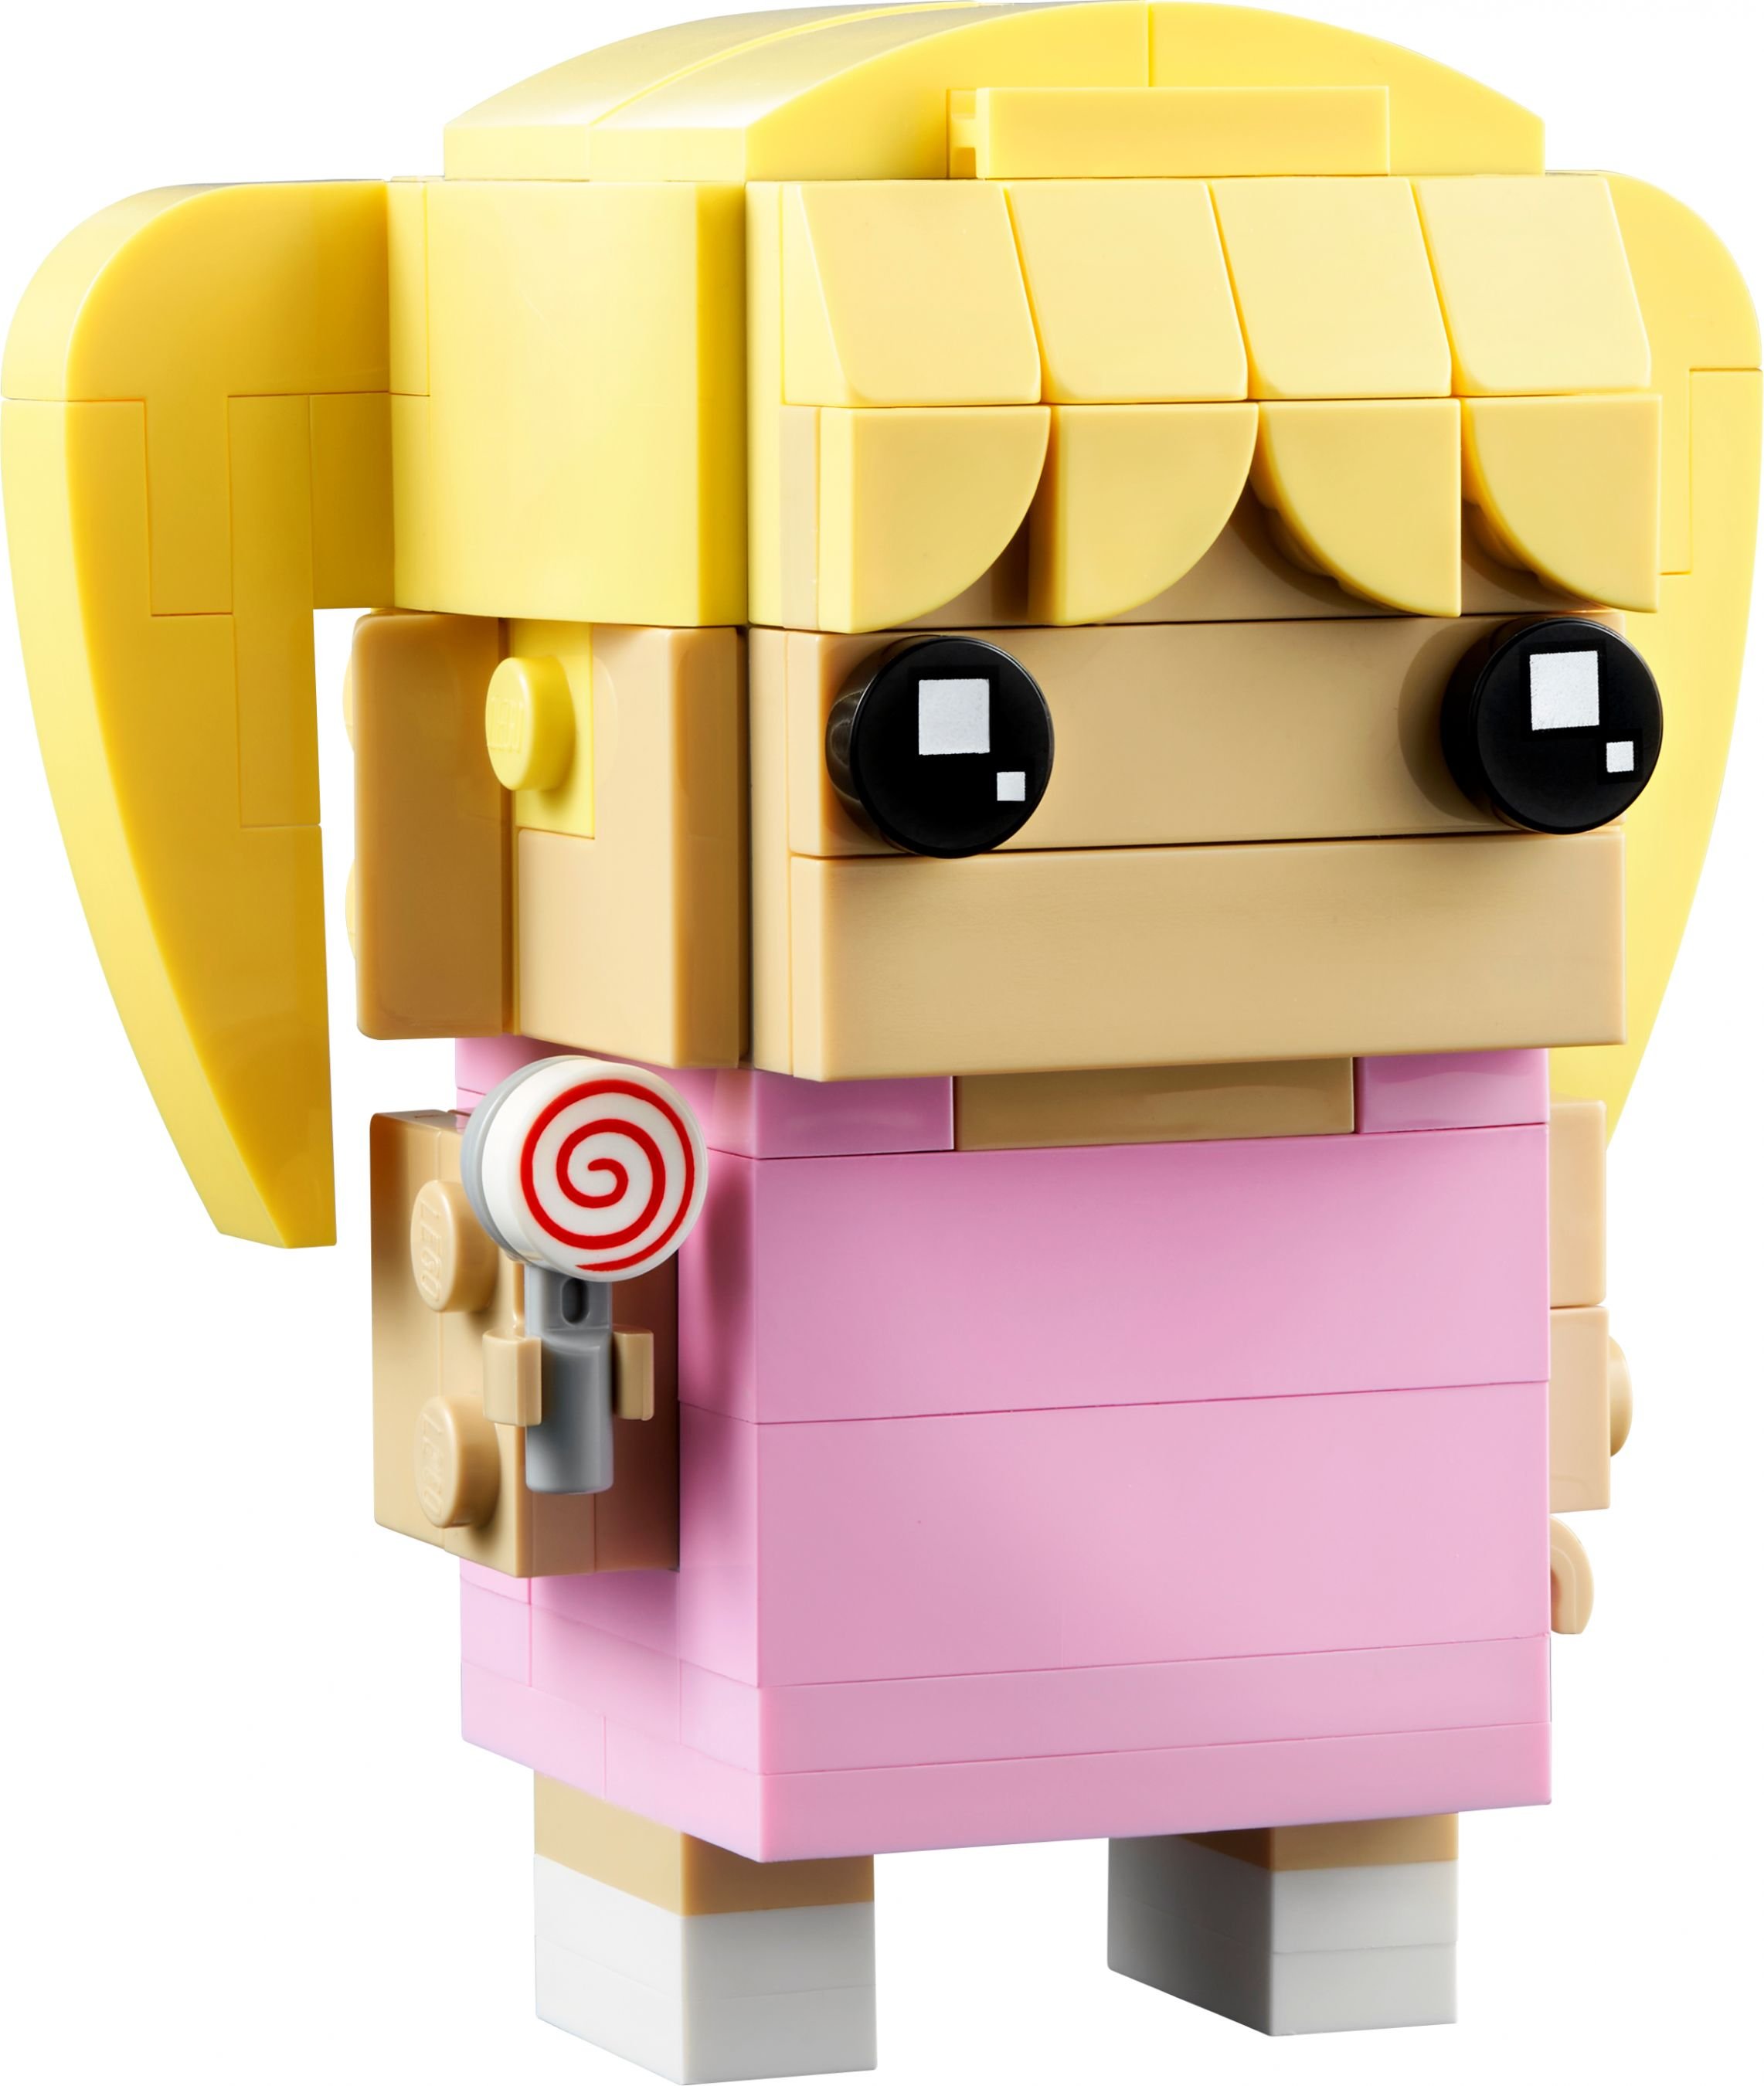 LEGO BrickHeadz 40548 Hommage an die Spice Girls LEGO_40548_alt3.jpg